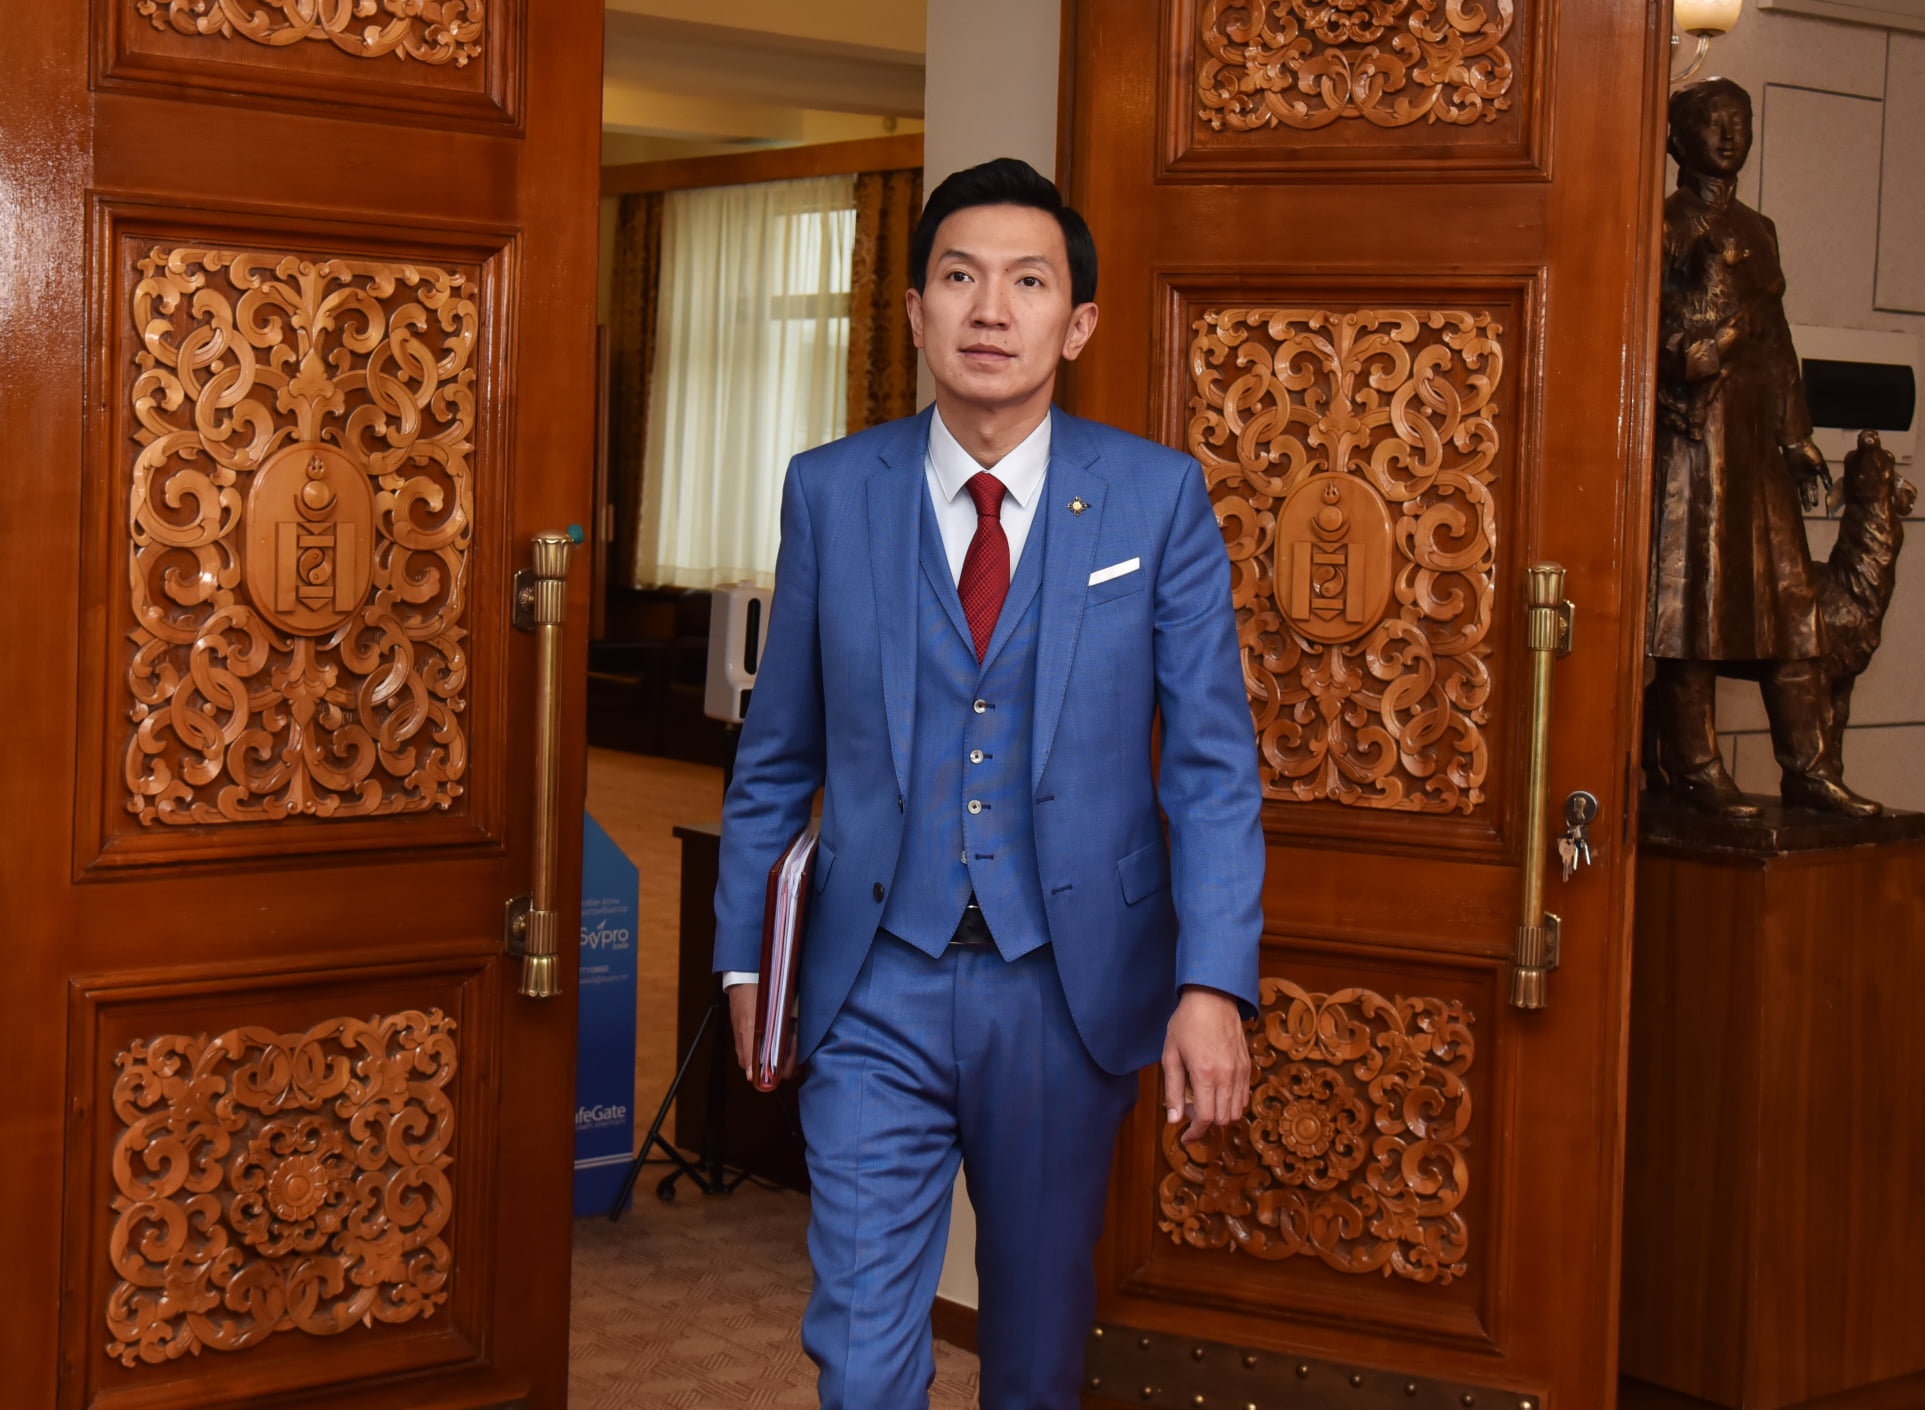 Н.Учрал: Монгол Улсын мэдээллийн технологи, цахим шилжилт, дижитал эдийн засгийн хөгжлийг нэг шат ахиулахуйц түүхэн чуулган болж өнгөрлөө